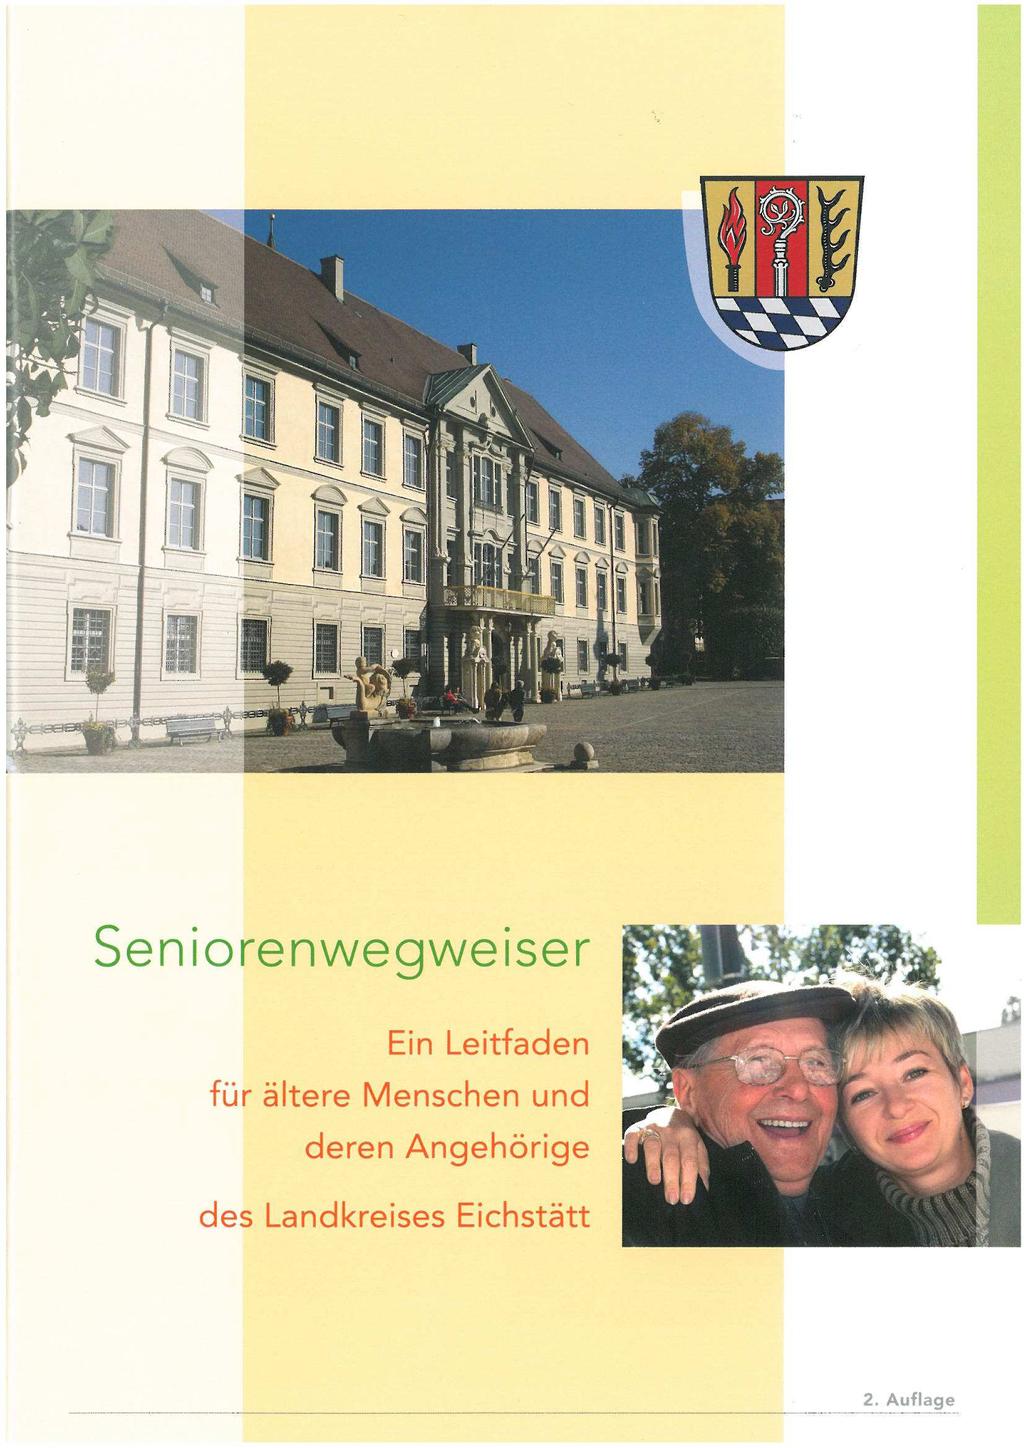 Neuauflage des Seniorenwegweisers des Landkreises Eichstätt Wie bereits in unserem Mitteilungsblatt März 2009 angegeben, hat der Landkreis Eichstätt Anfang 2009 die 2.